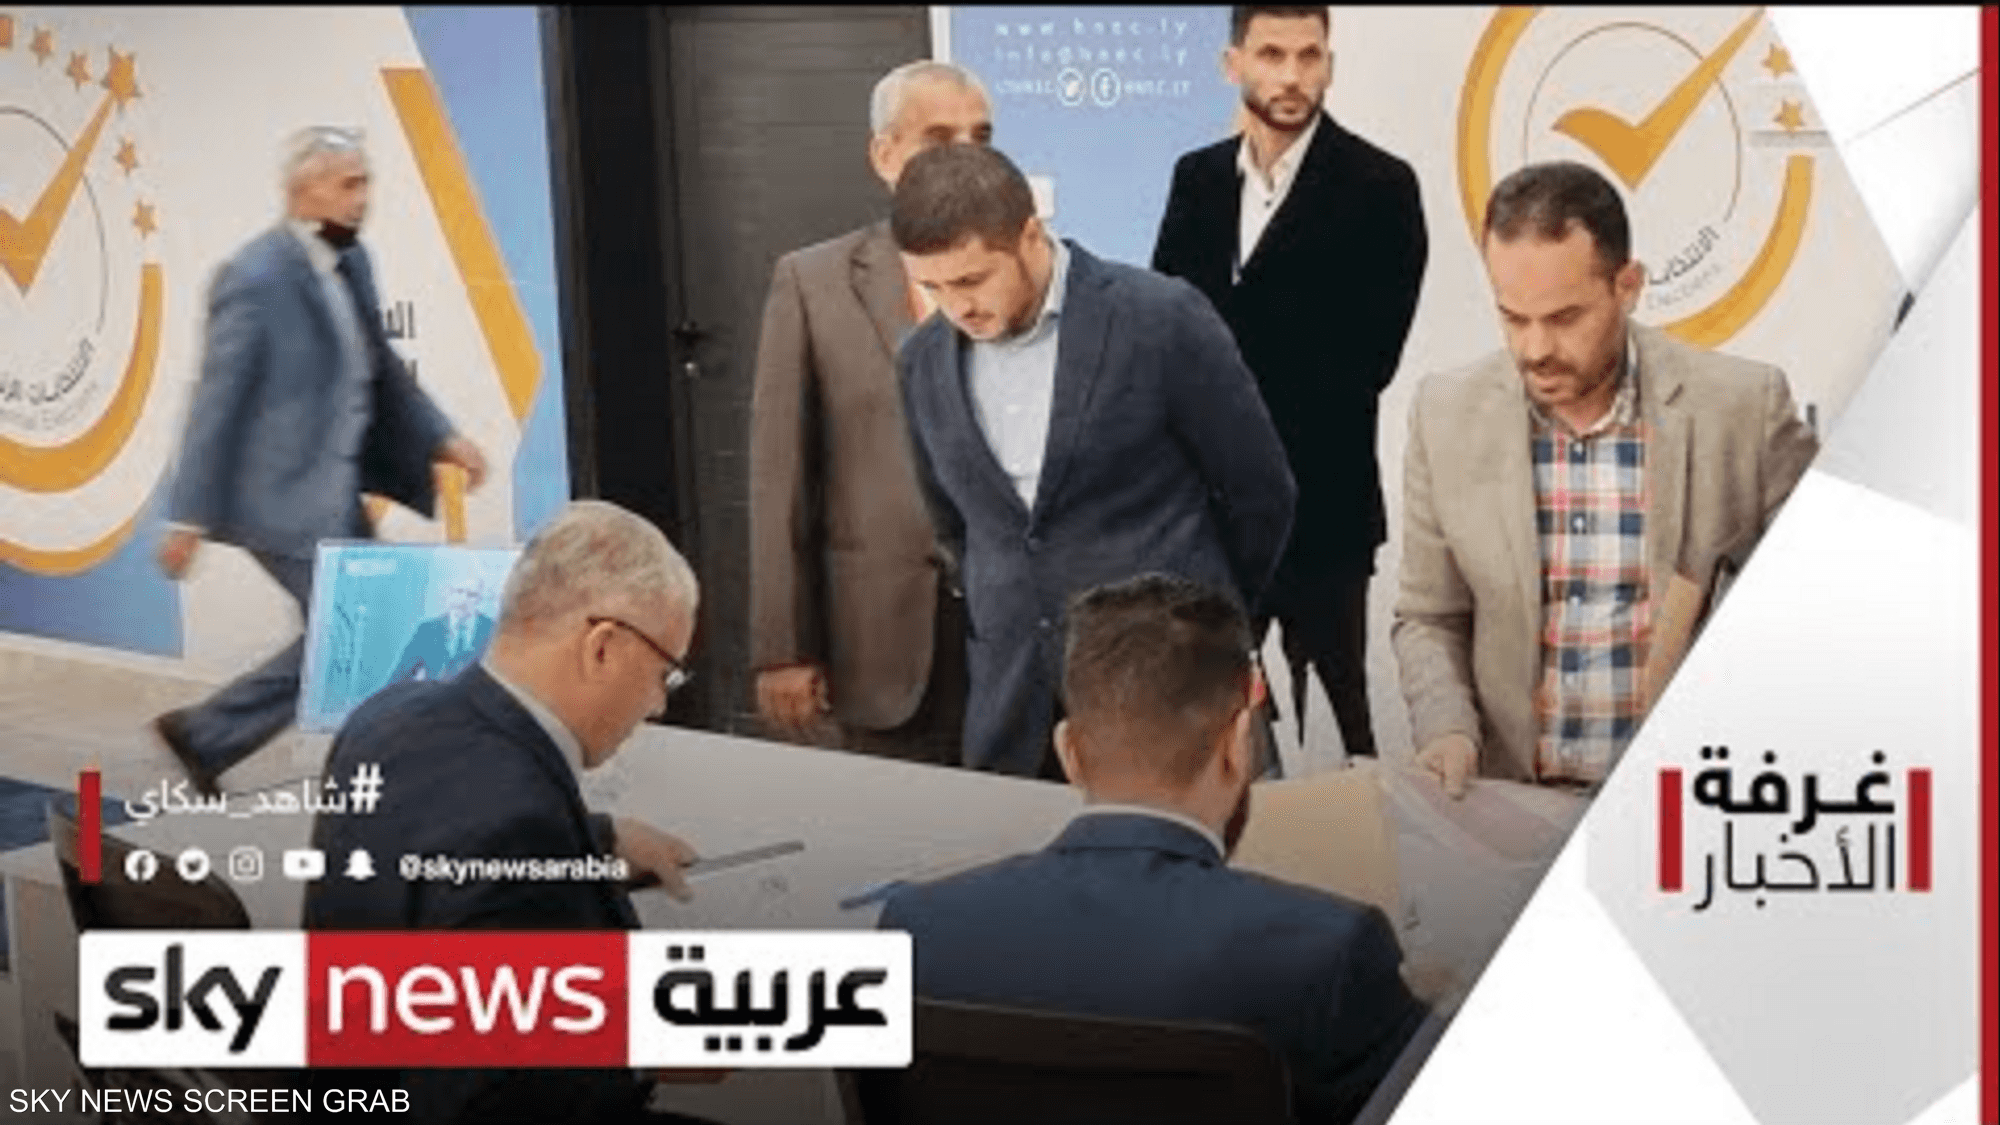 ليبيا.. استبعاد مرشحين للرئاسة بين الأسباب والخطوات